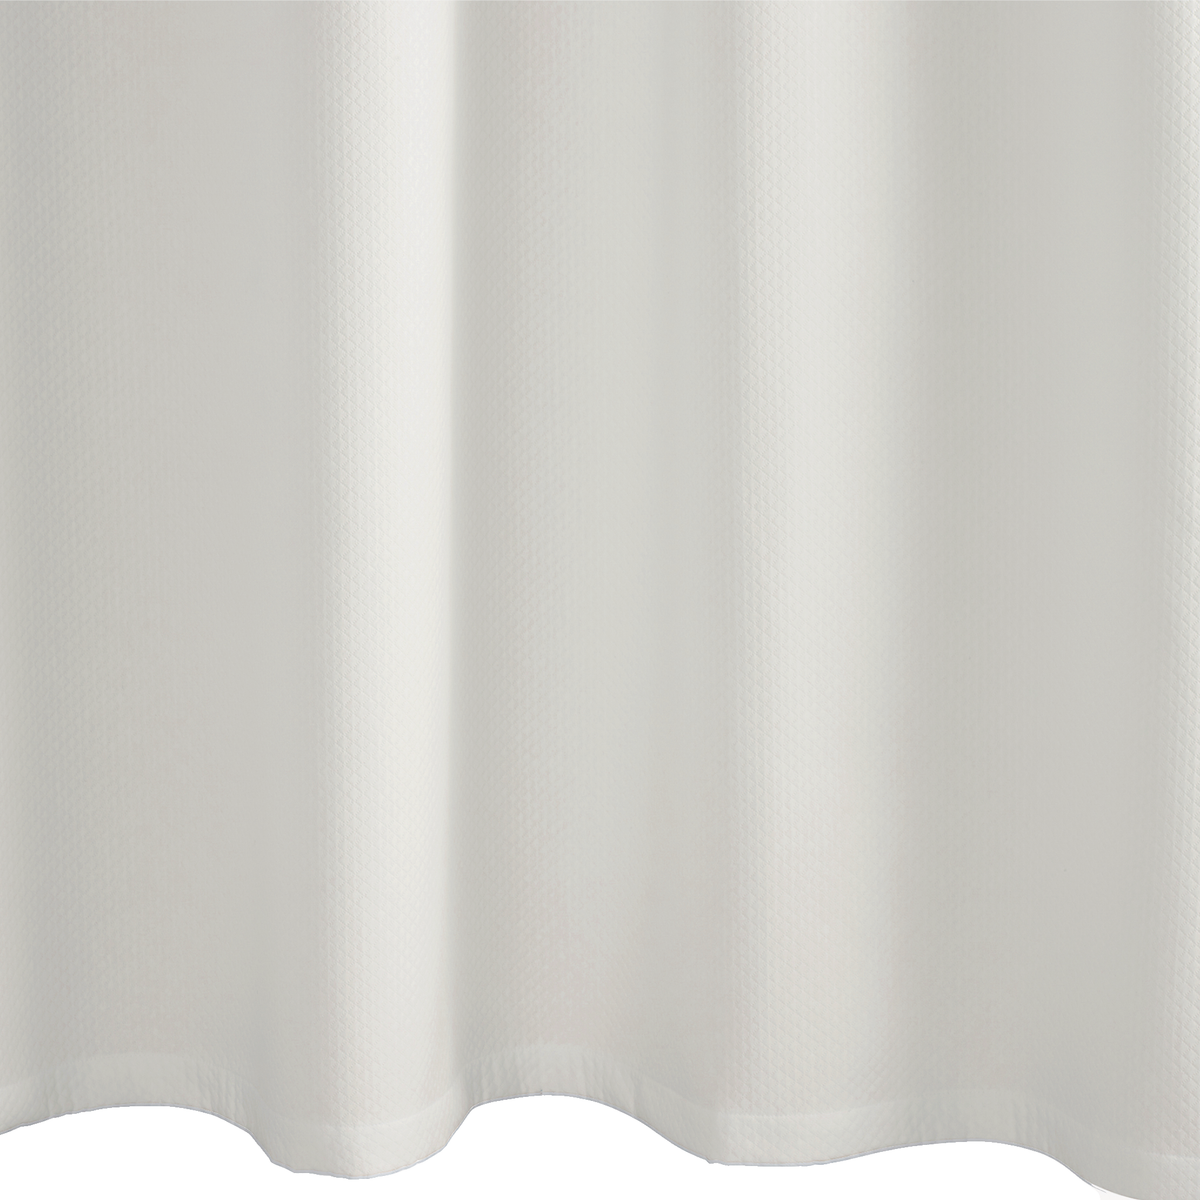 Fabric Closeup of Matouk Diamond Pique Shower Curtain in Bone Color